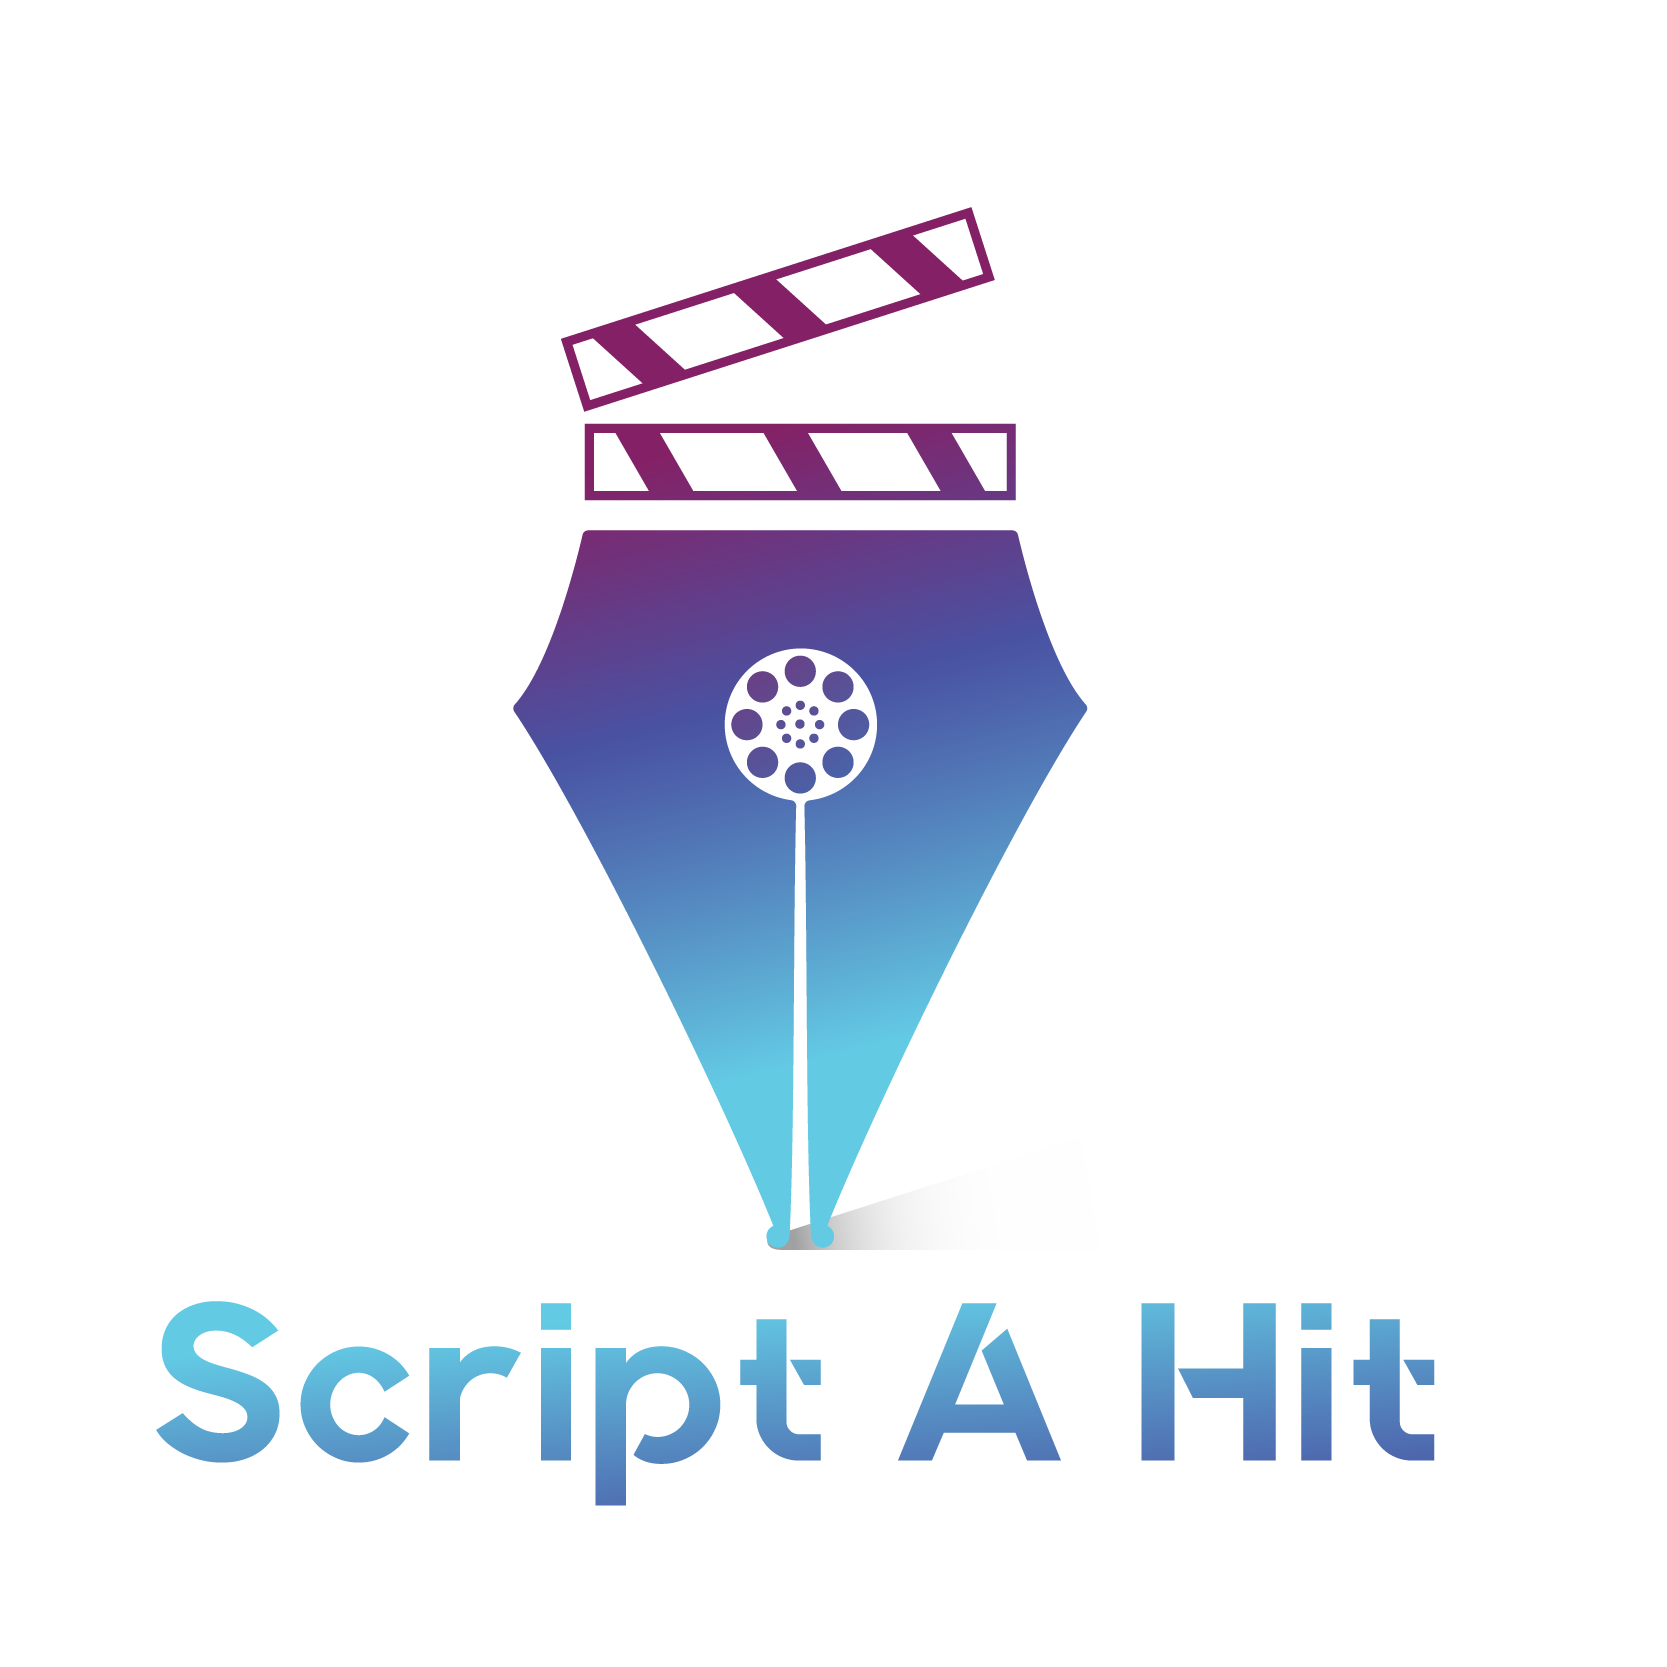 Script-a-hit-logo-jumpptech